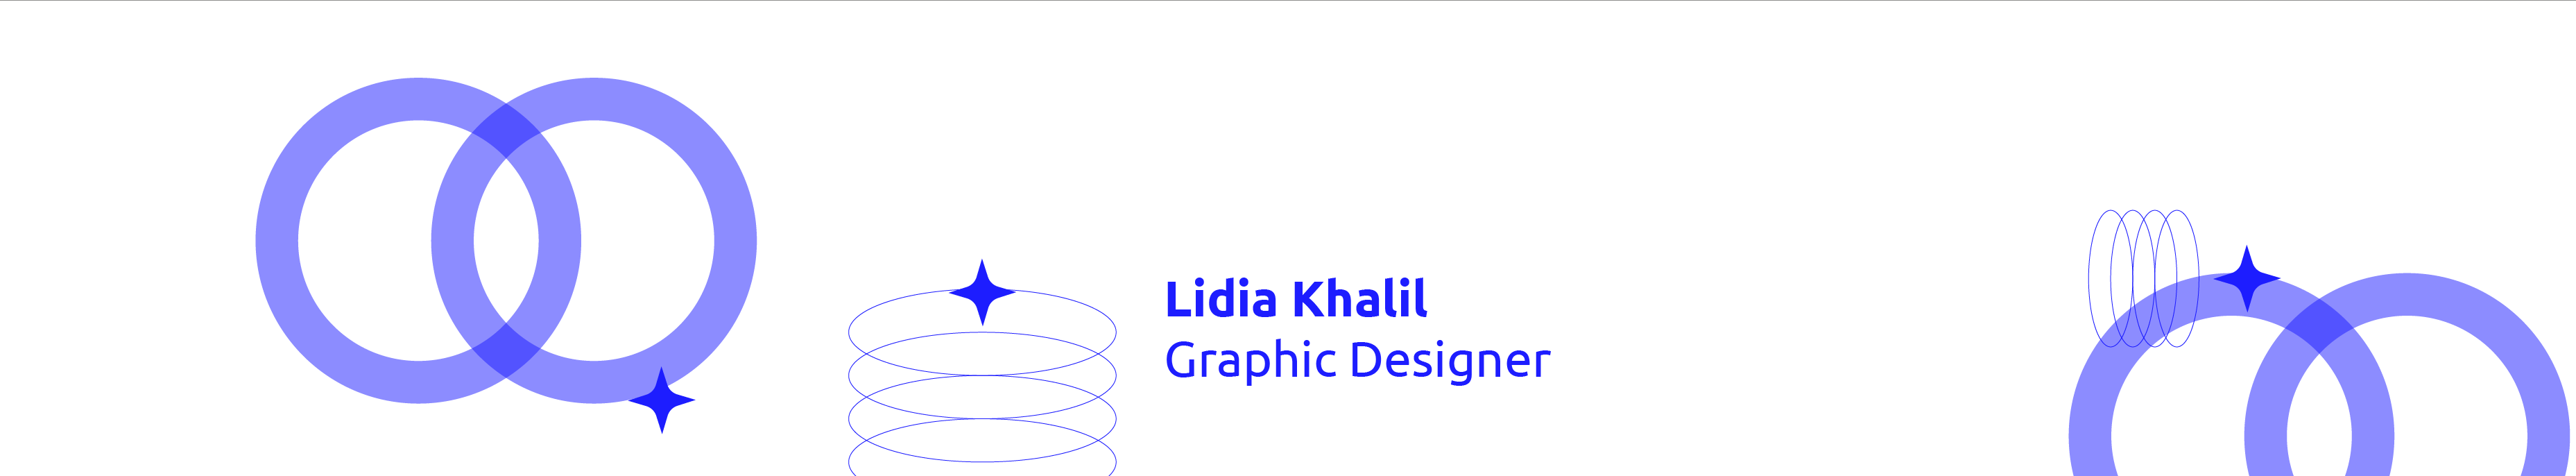 Lidia Khalil のプロファイルバナー